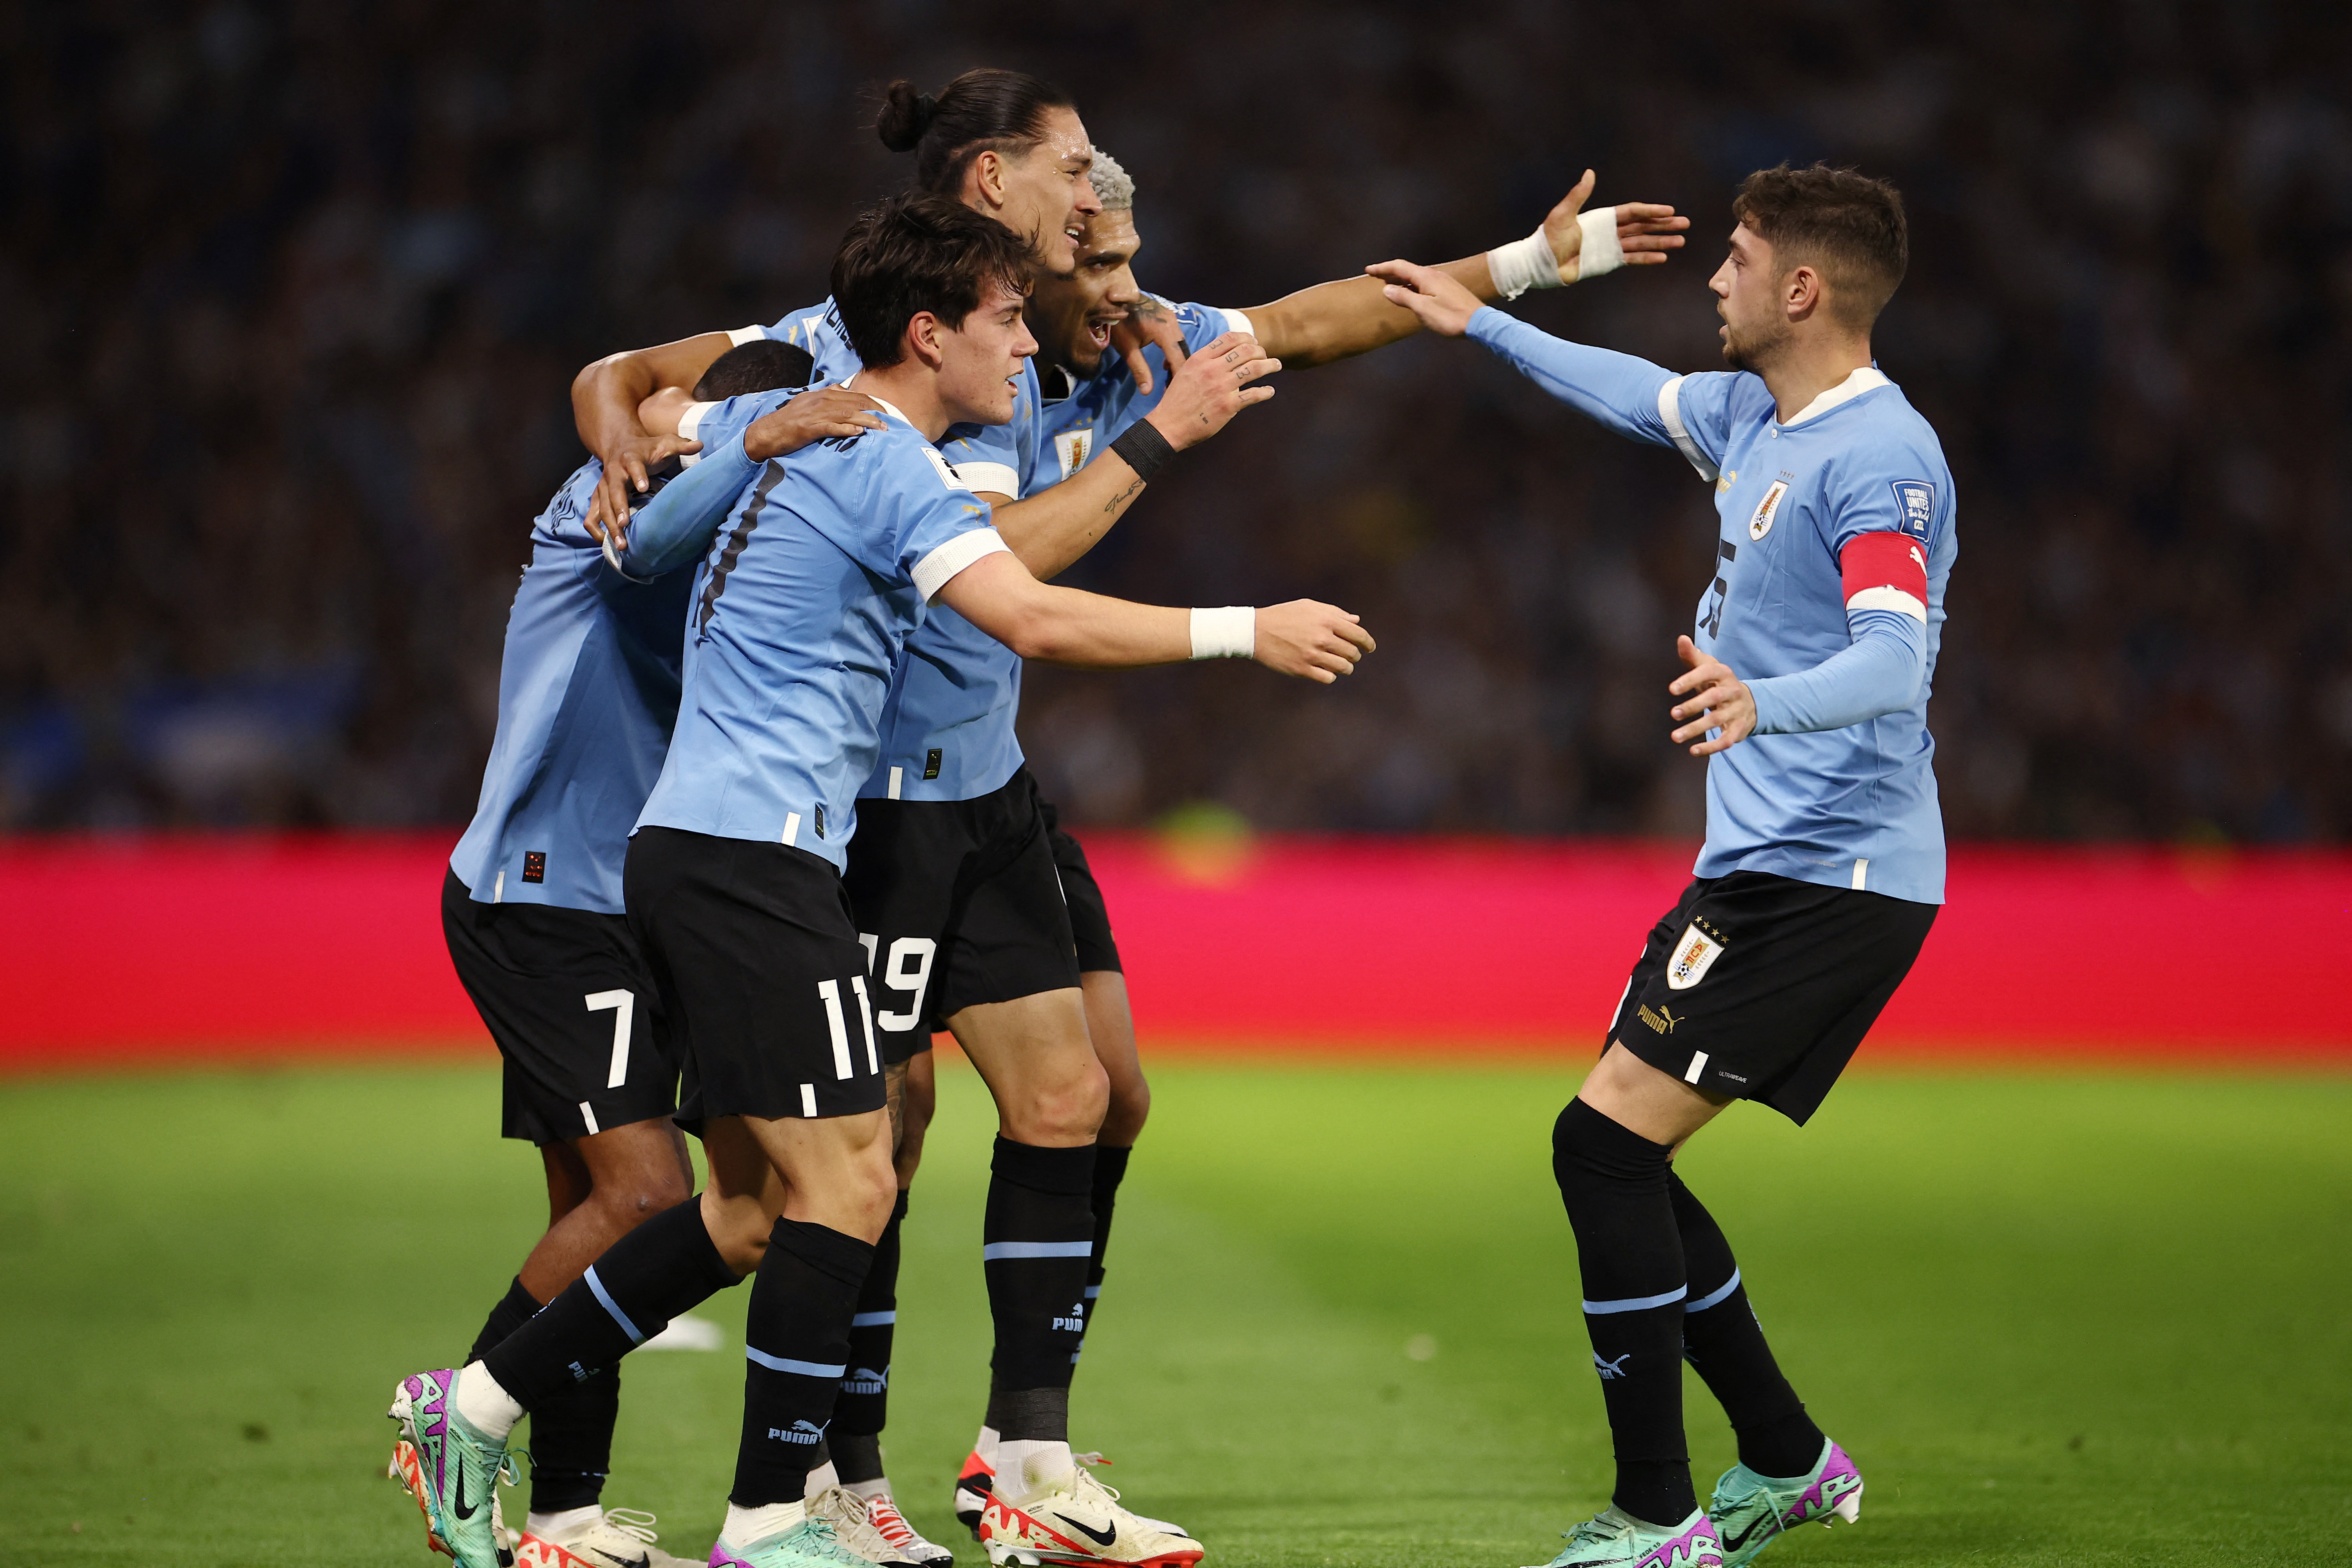 Nacional es el nuevo campeón del fútbol uruguayo; venció a